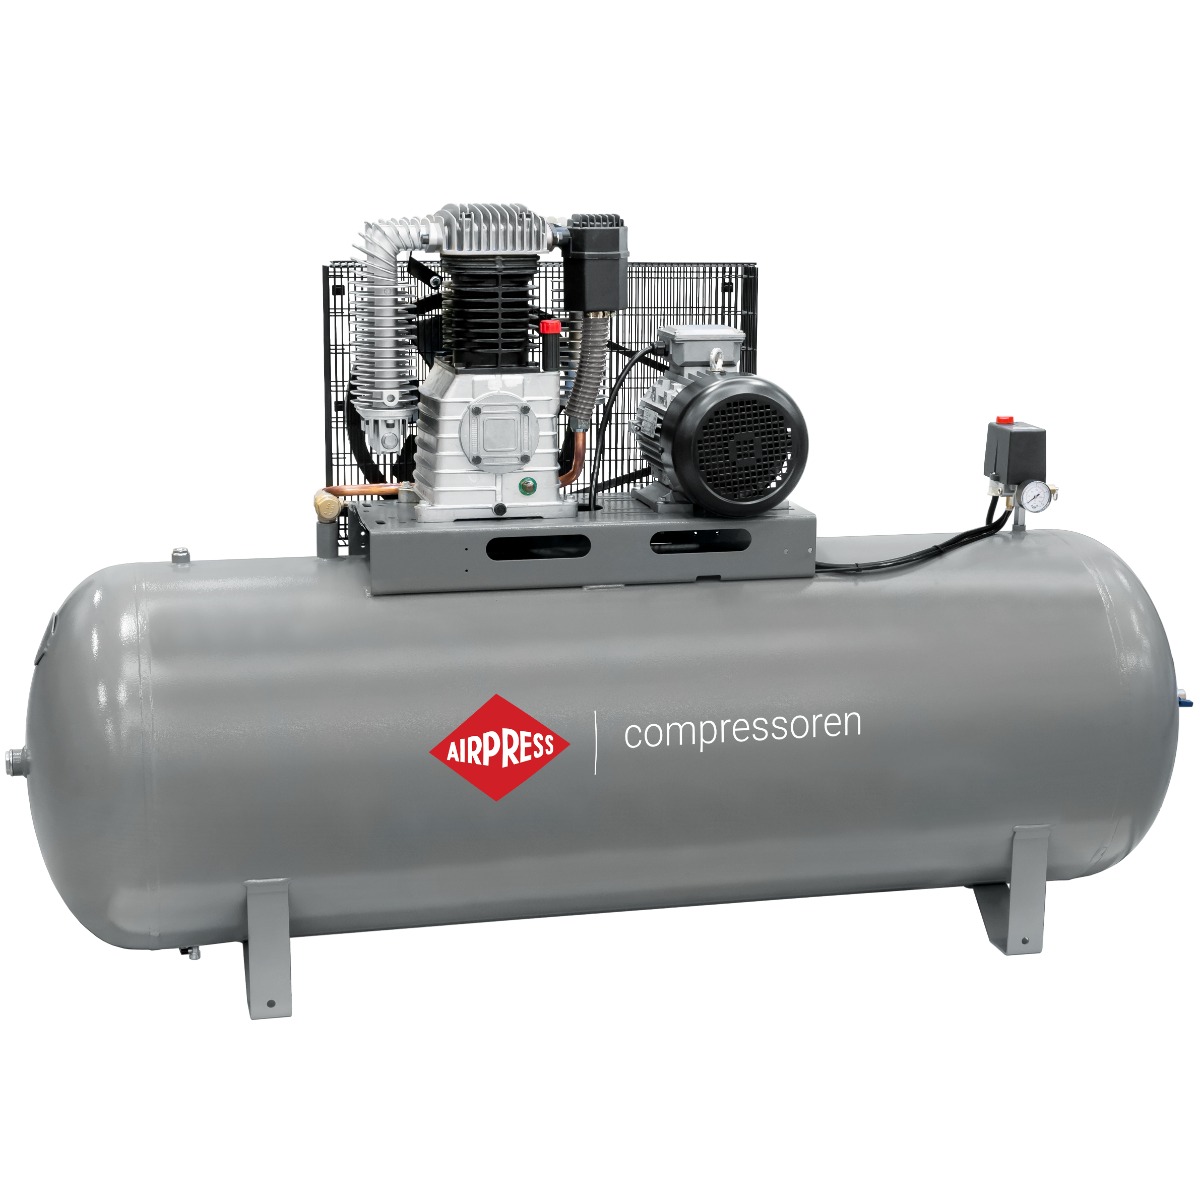 HK 1000-500 Pro compressor